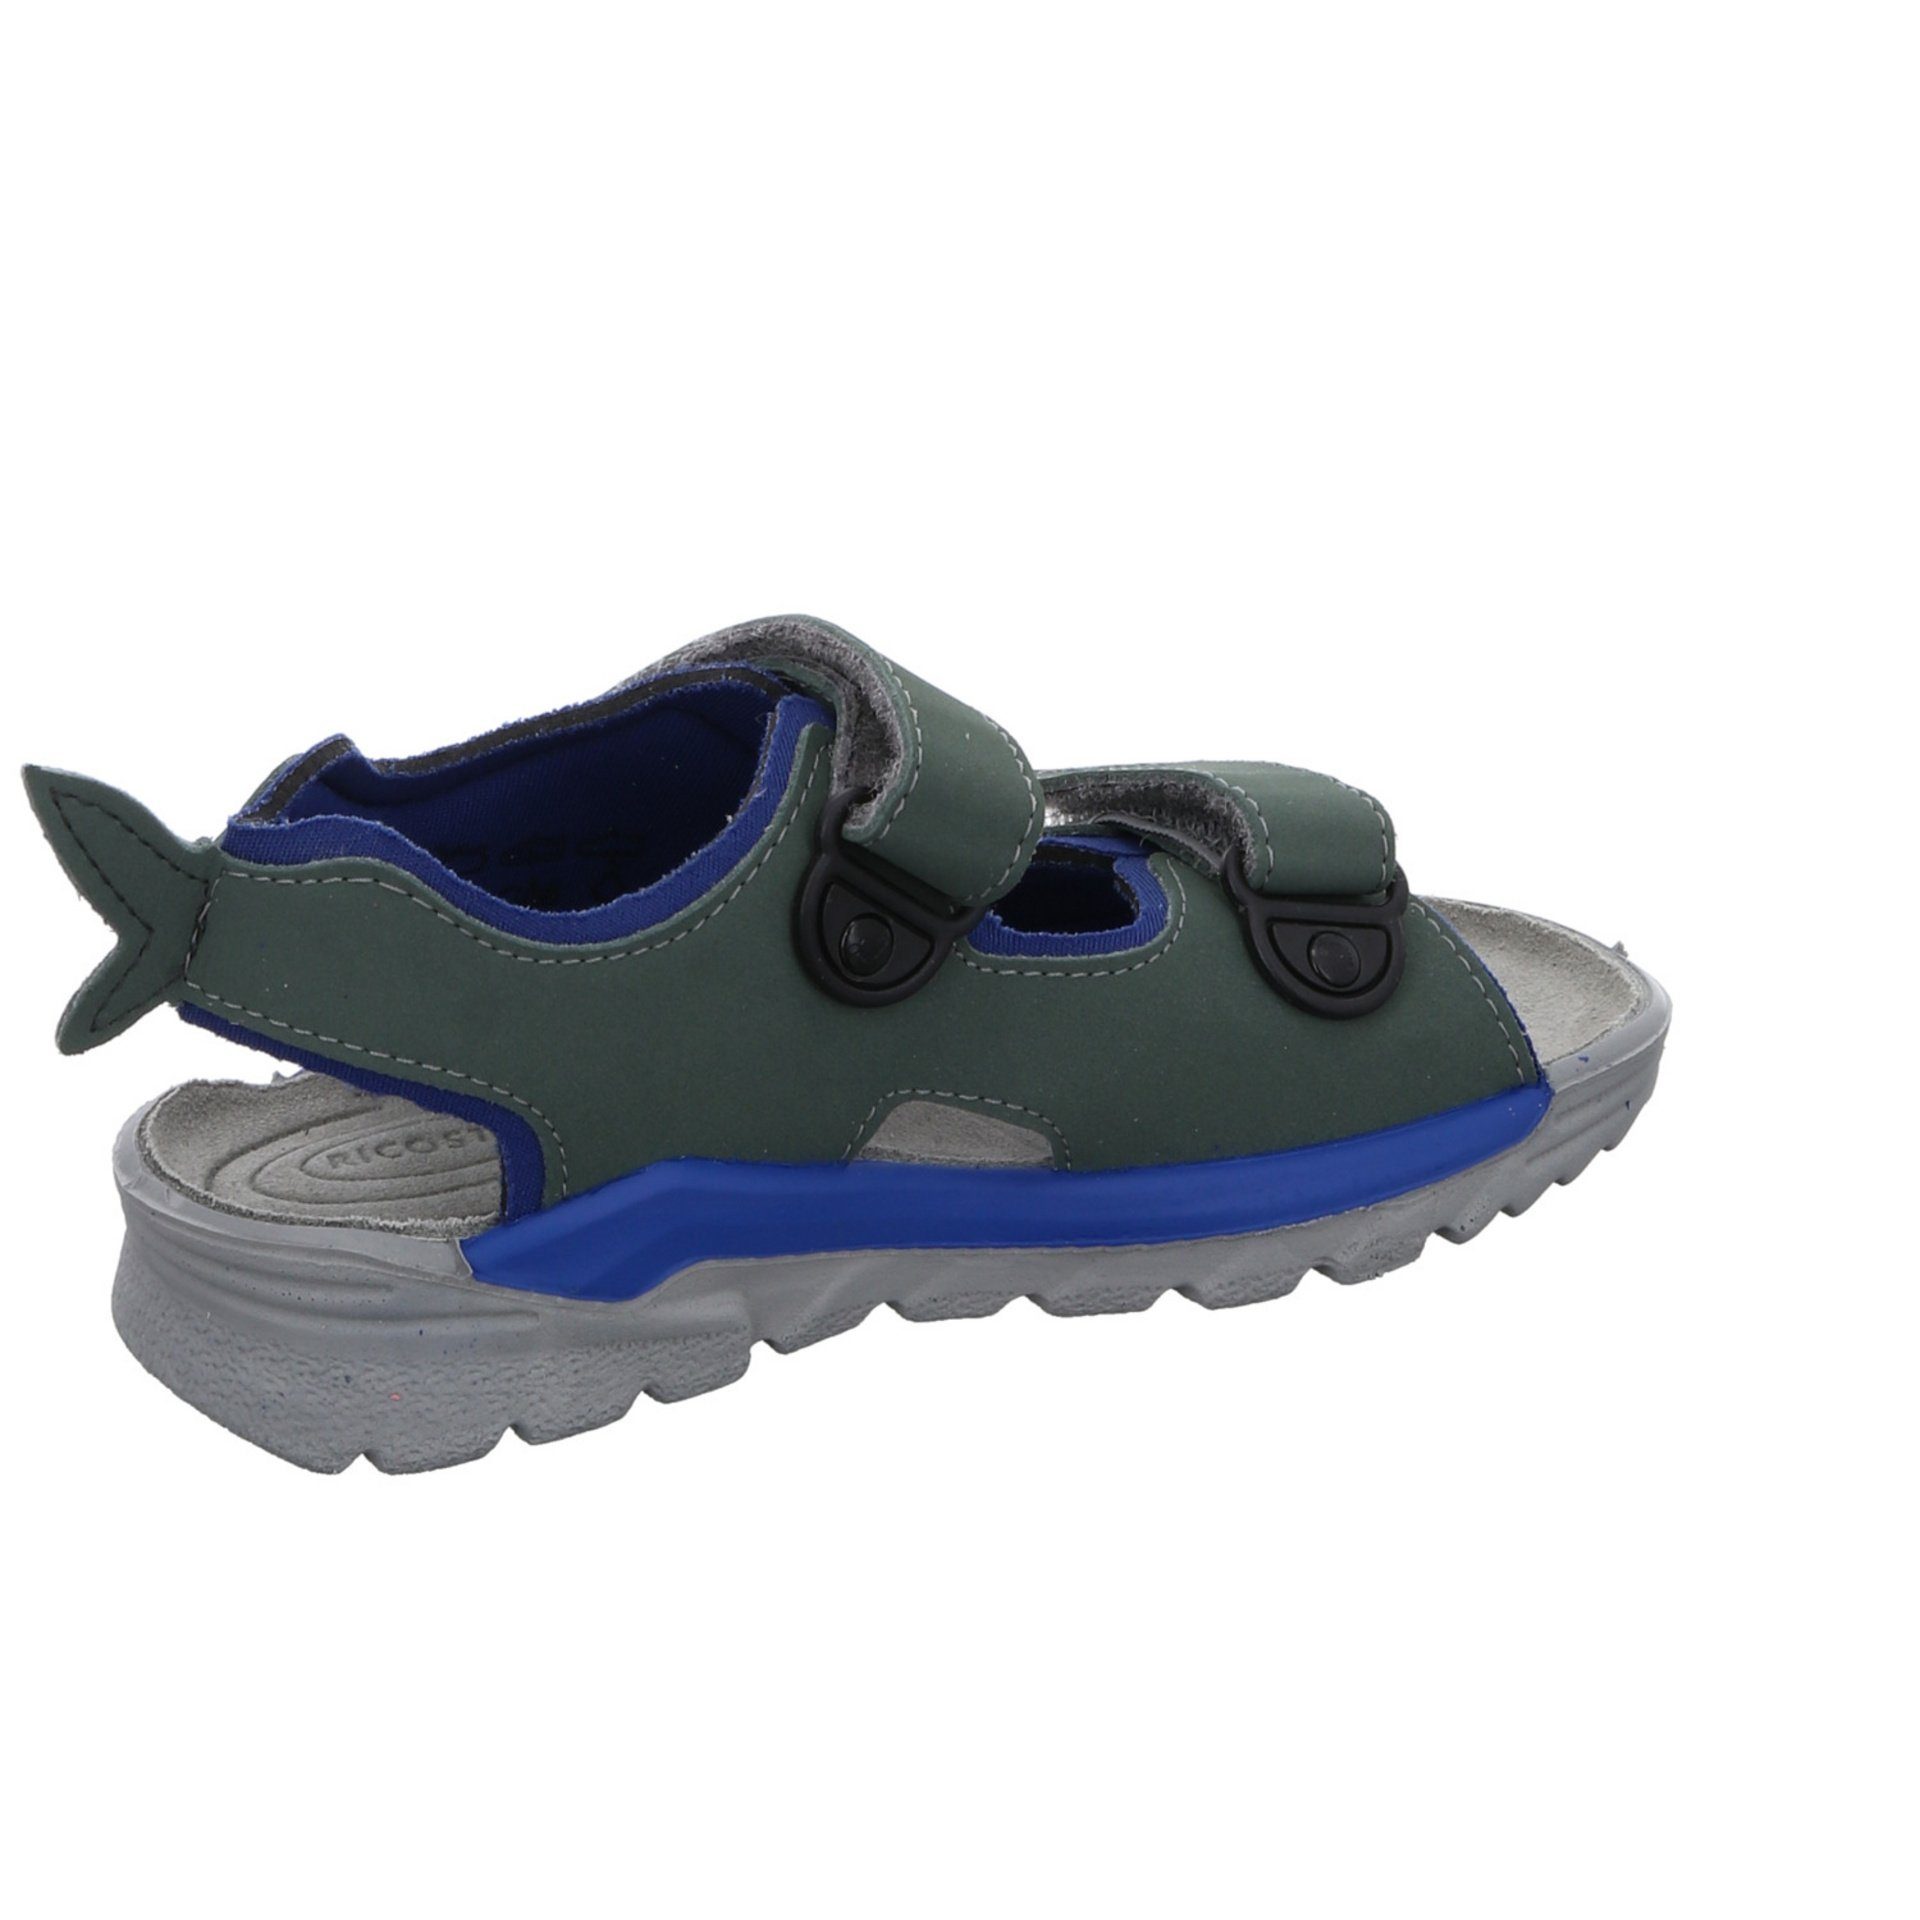 Sandale Sandale Kinderschuhe Ricosta Jungen Textil Schuhe Shark grün Sandalen